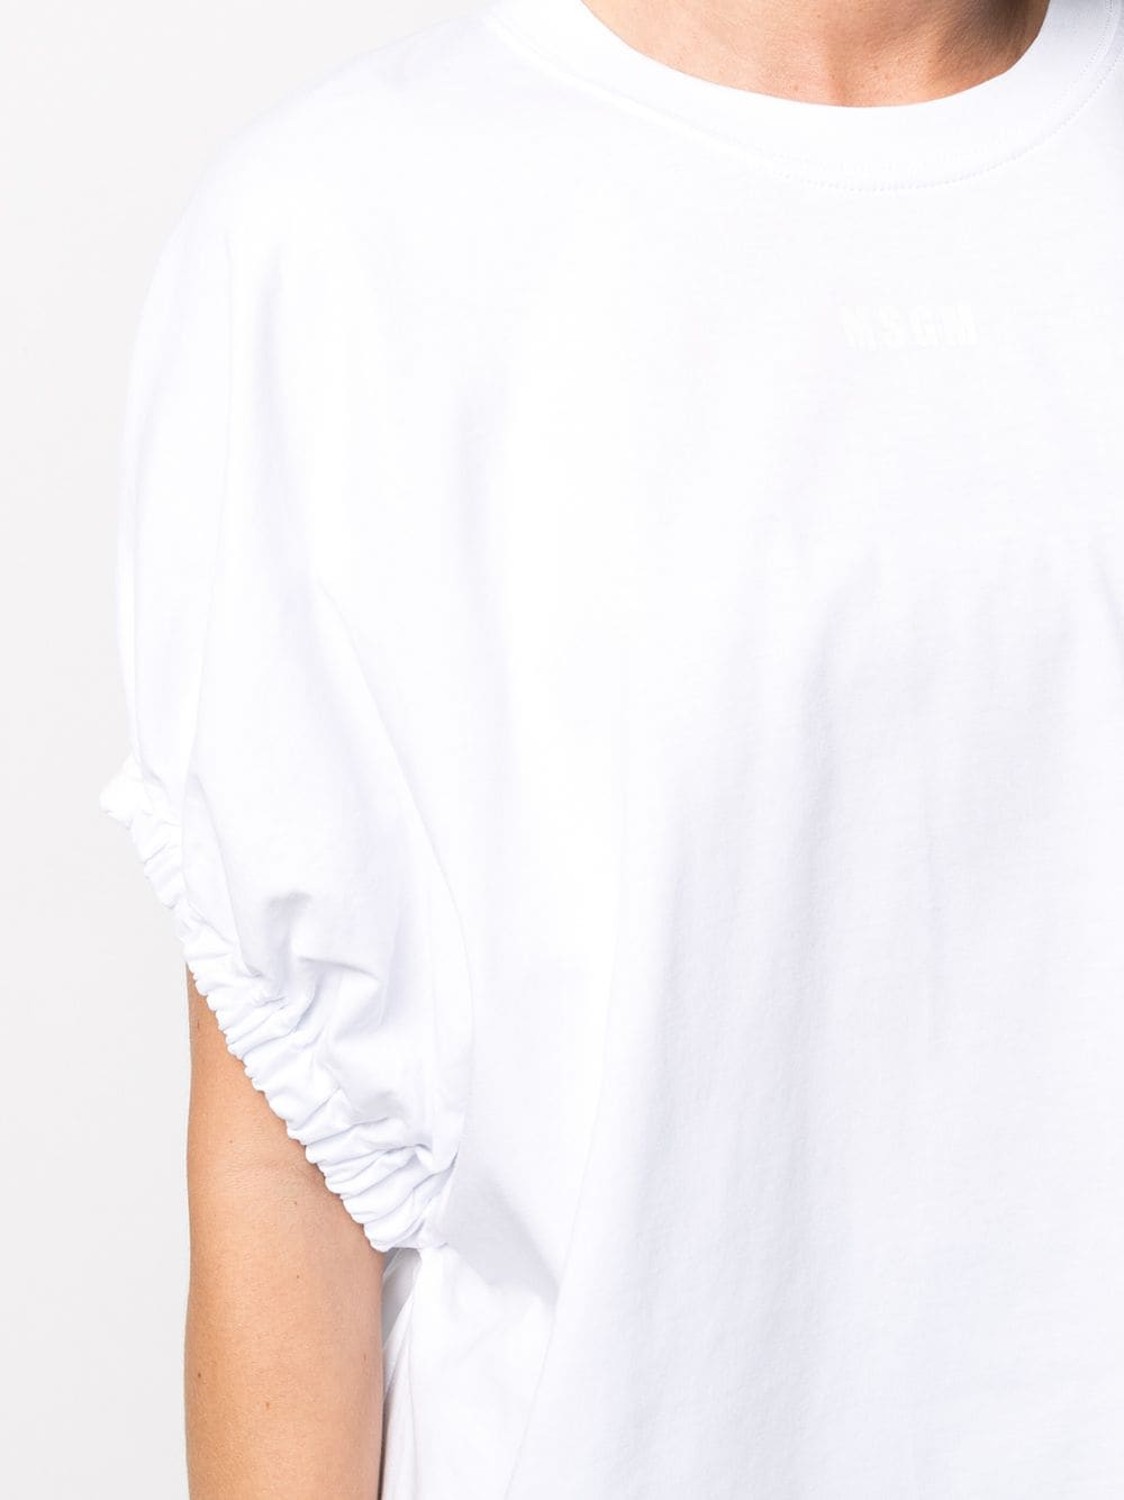 shop MSGM Saldi T-shirts: T-shirts MSGM, girocollo, oversize, maniche corte, a pipistrello, arricciate.

Composizione: 100% cotone. number 2097